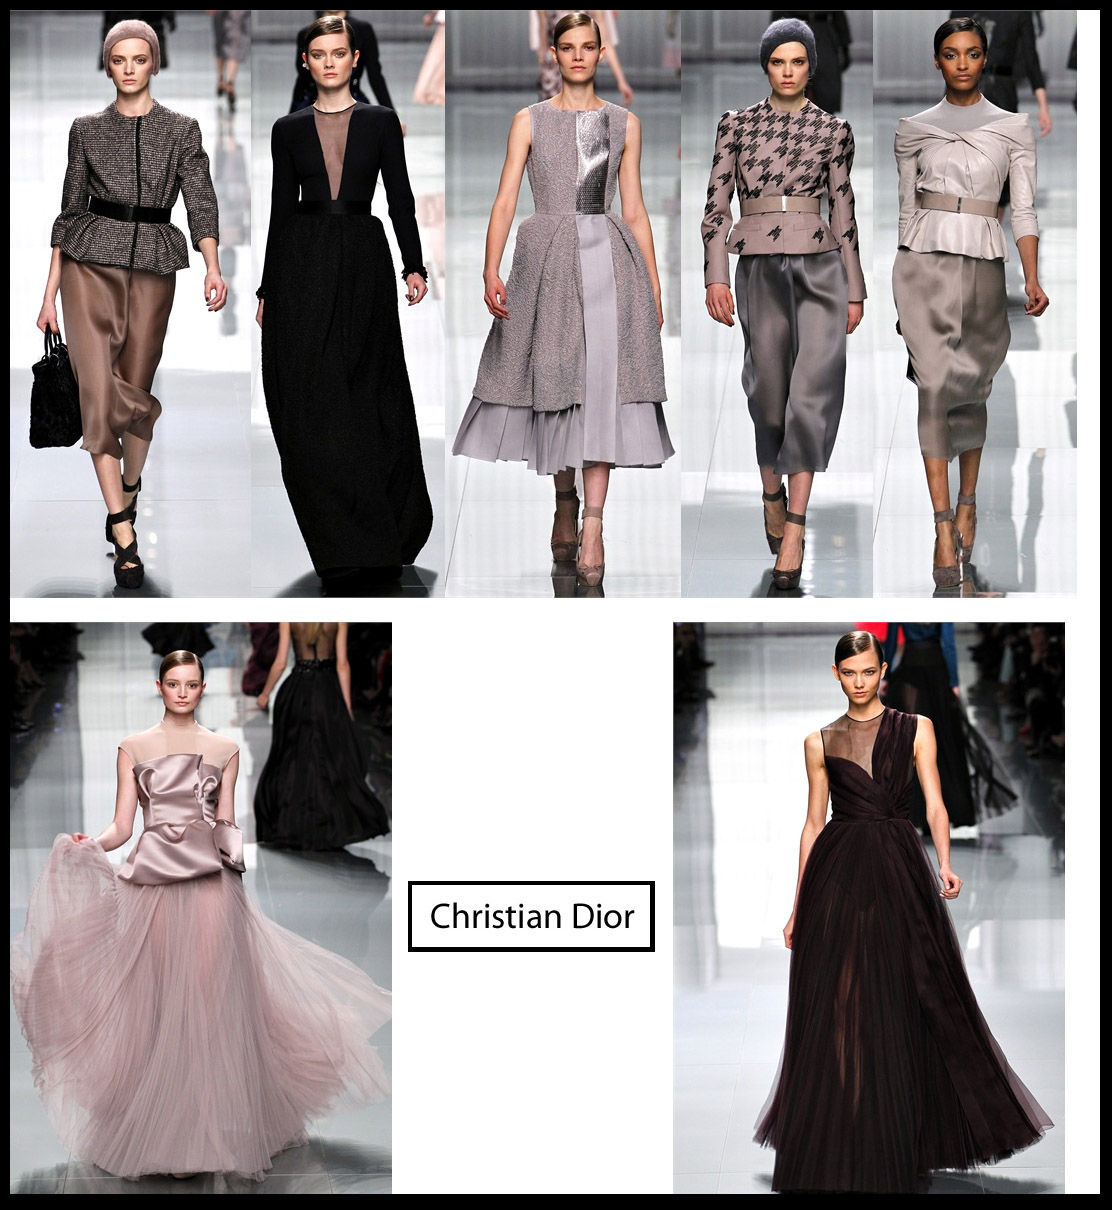 christian dior bill gaytten paris fashion week collezione autunno invrno 2012 2013